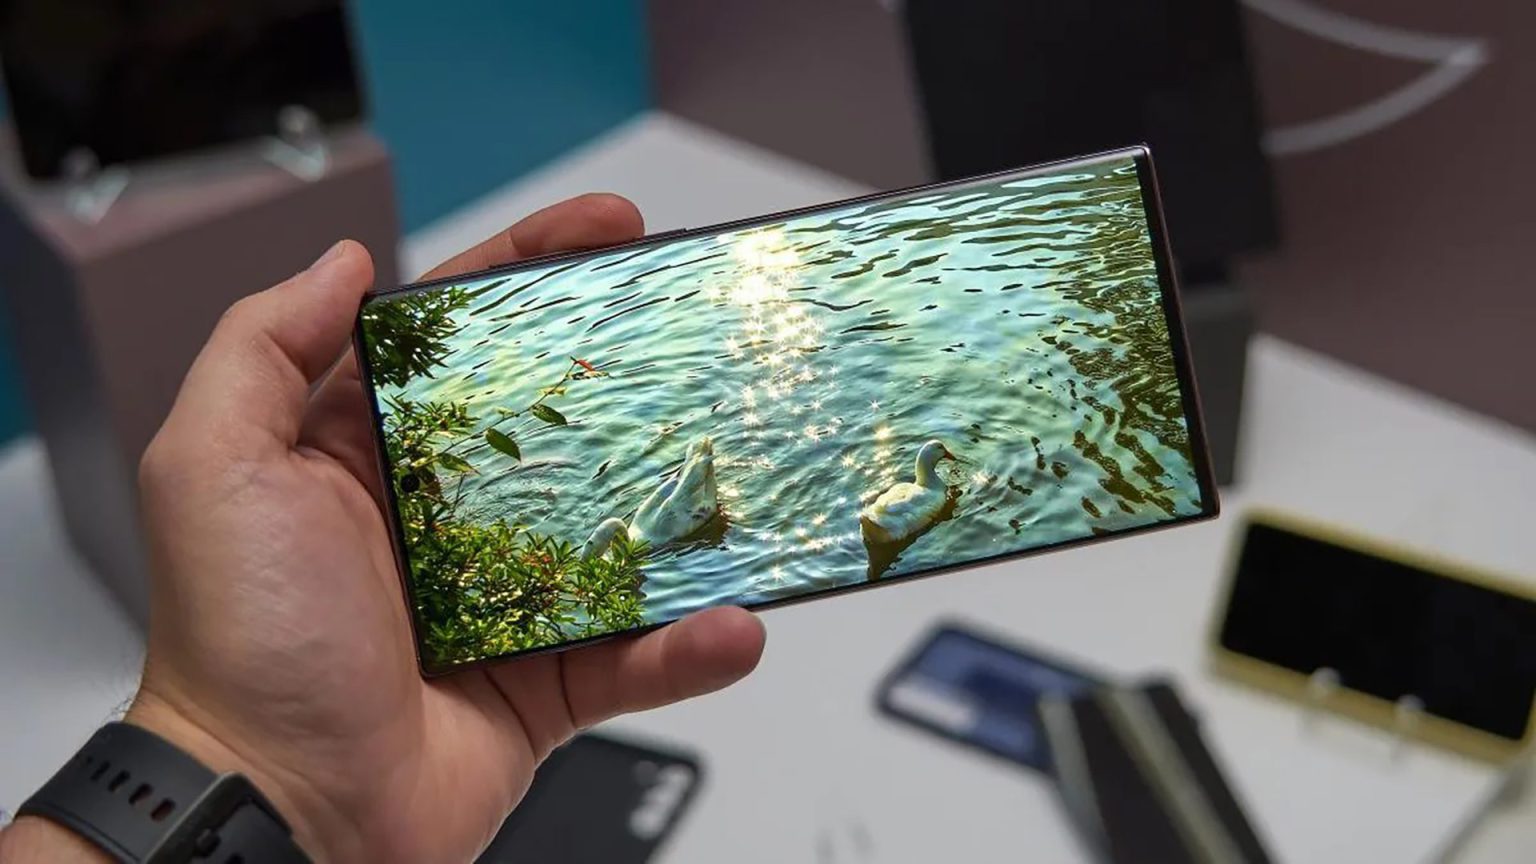 Samsung parece estar eliminando gradualmente otro accesorio de sus cajas de teléfonos inteligentes además del cargador, ahora le toca al protector de pantalla. Galaxy S22